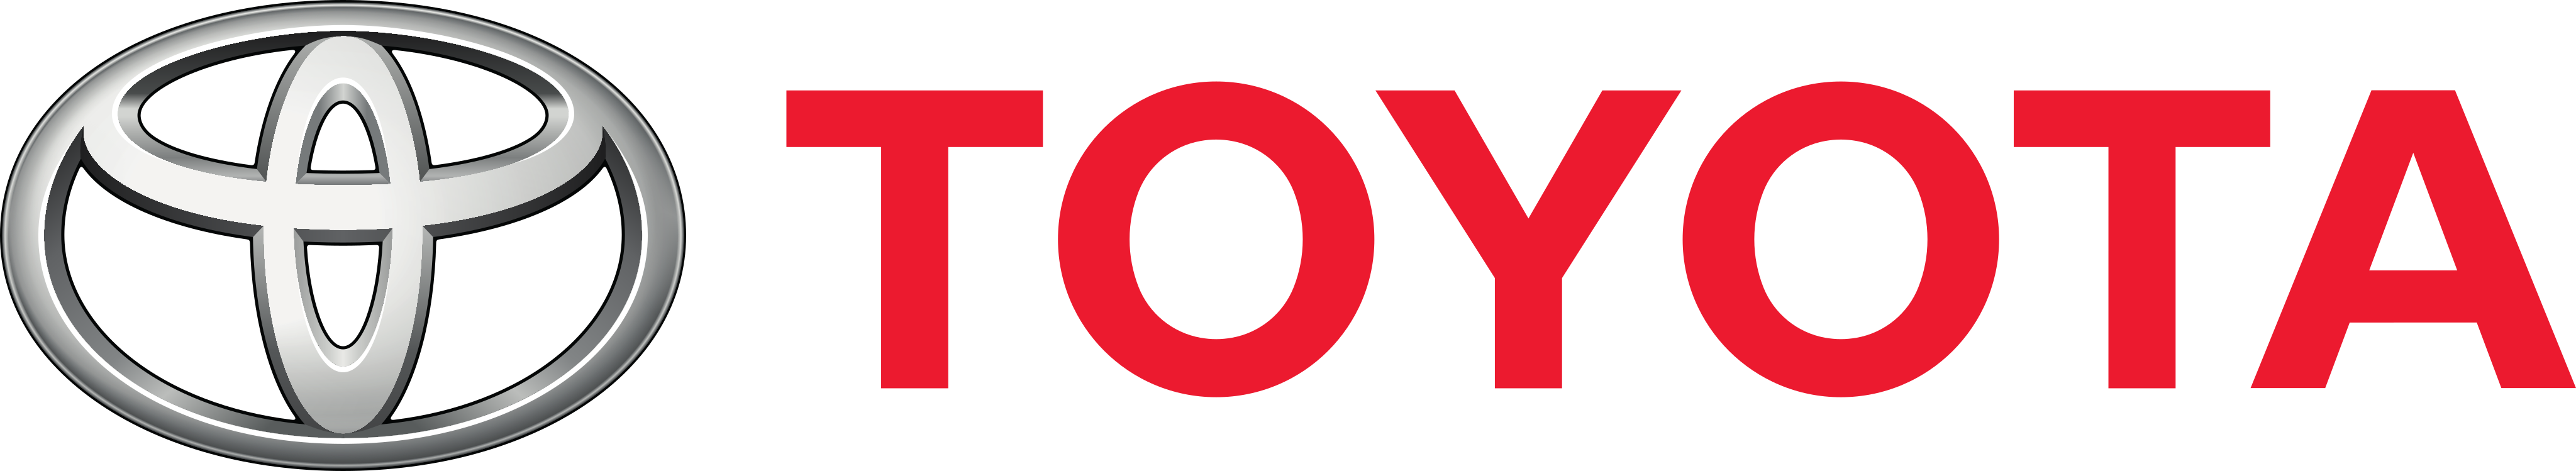 toyota-logo-3